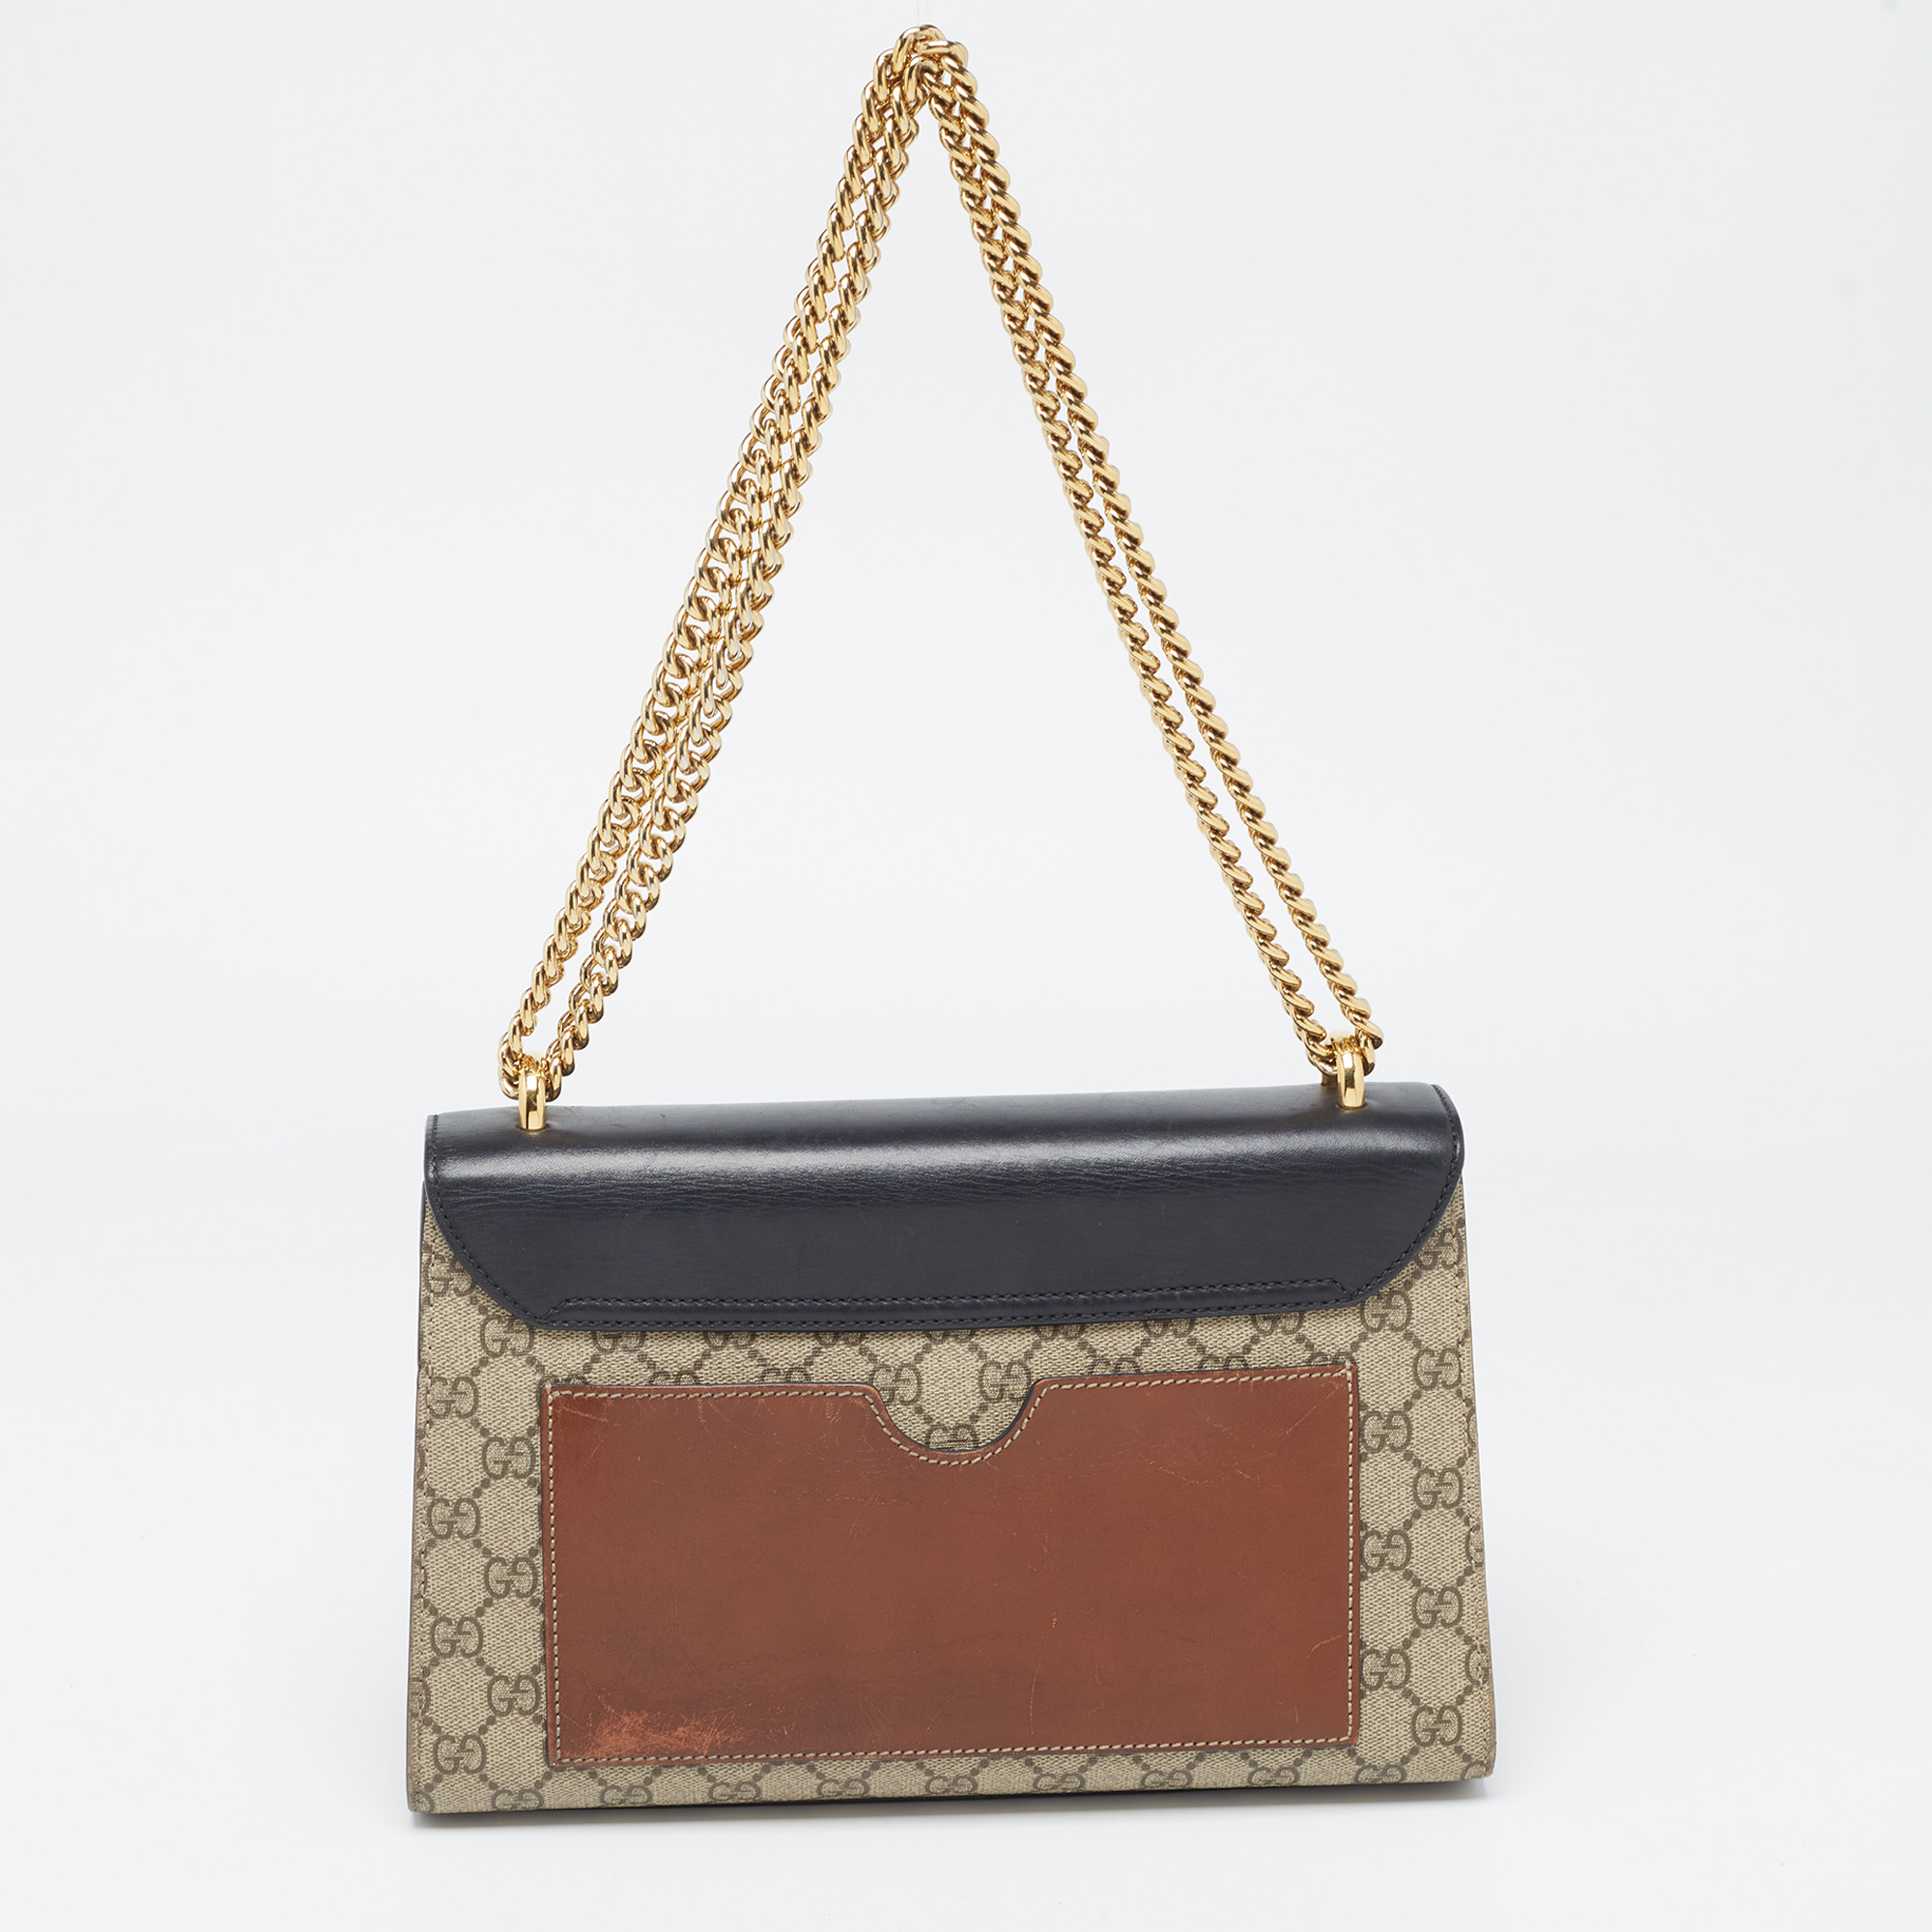 Gucci Beige/Black GG Supreme Canvas And Leather Medium Padlock Shoulder Bag